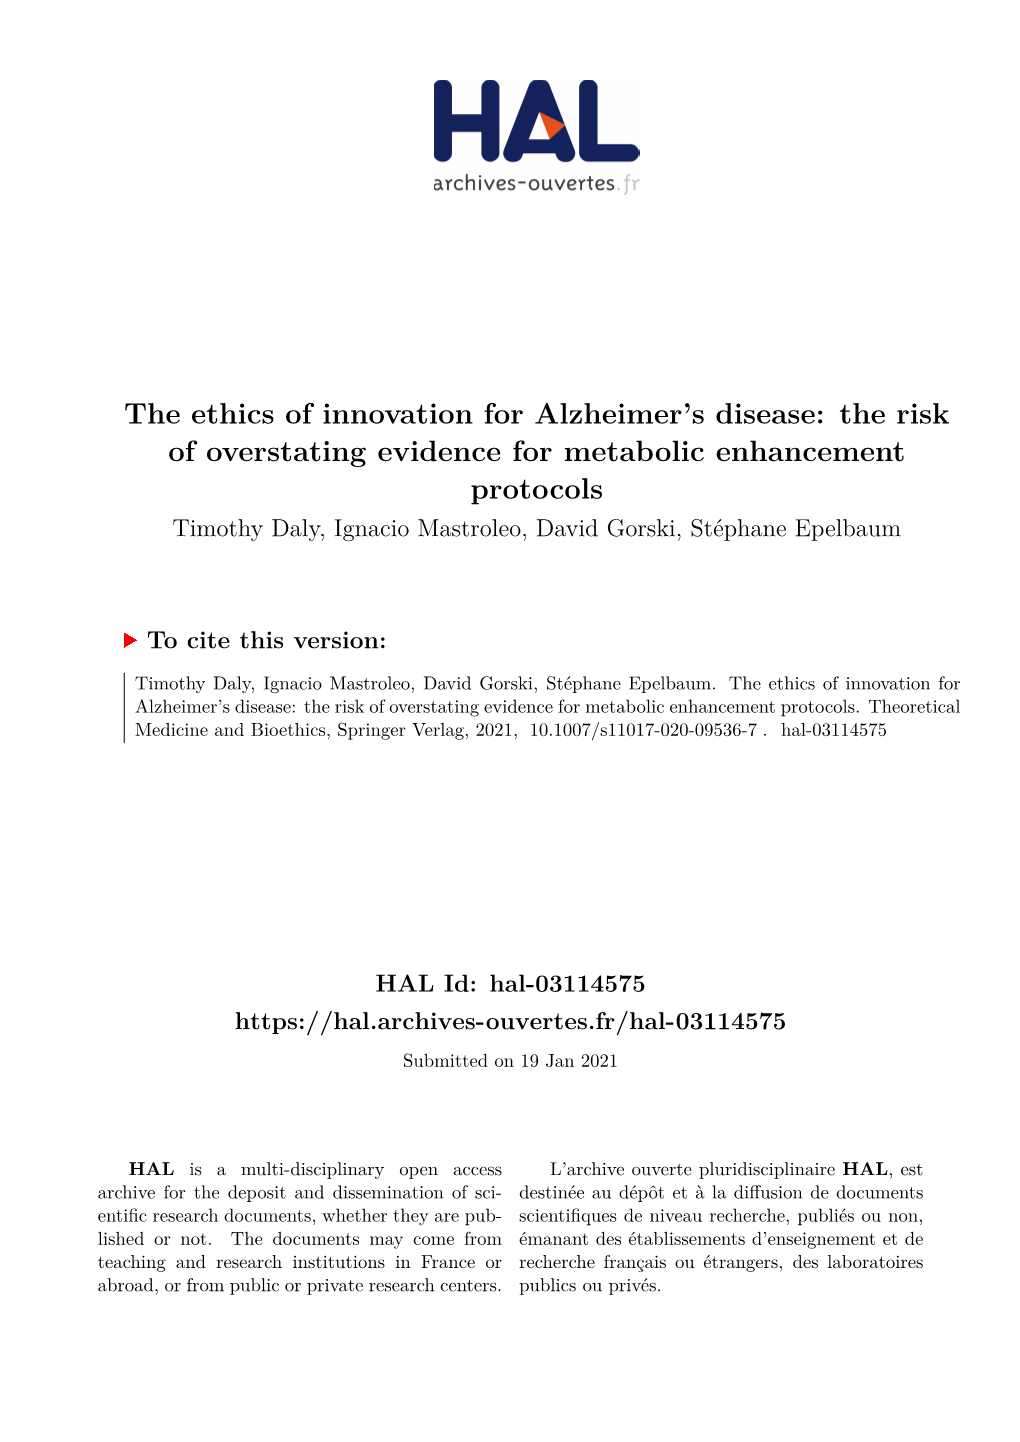 The Ethics of Innovation for Alzheimer's